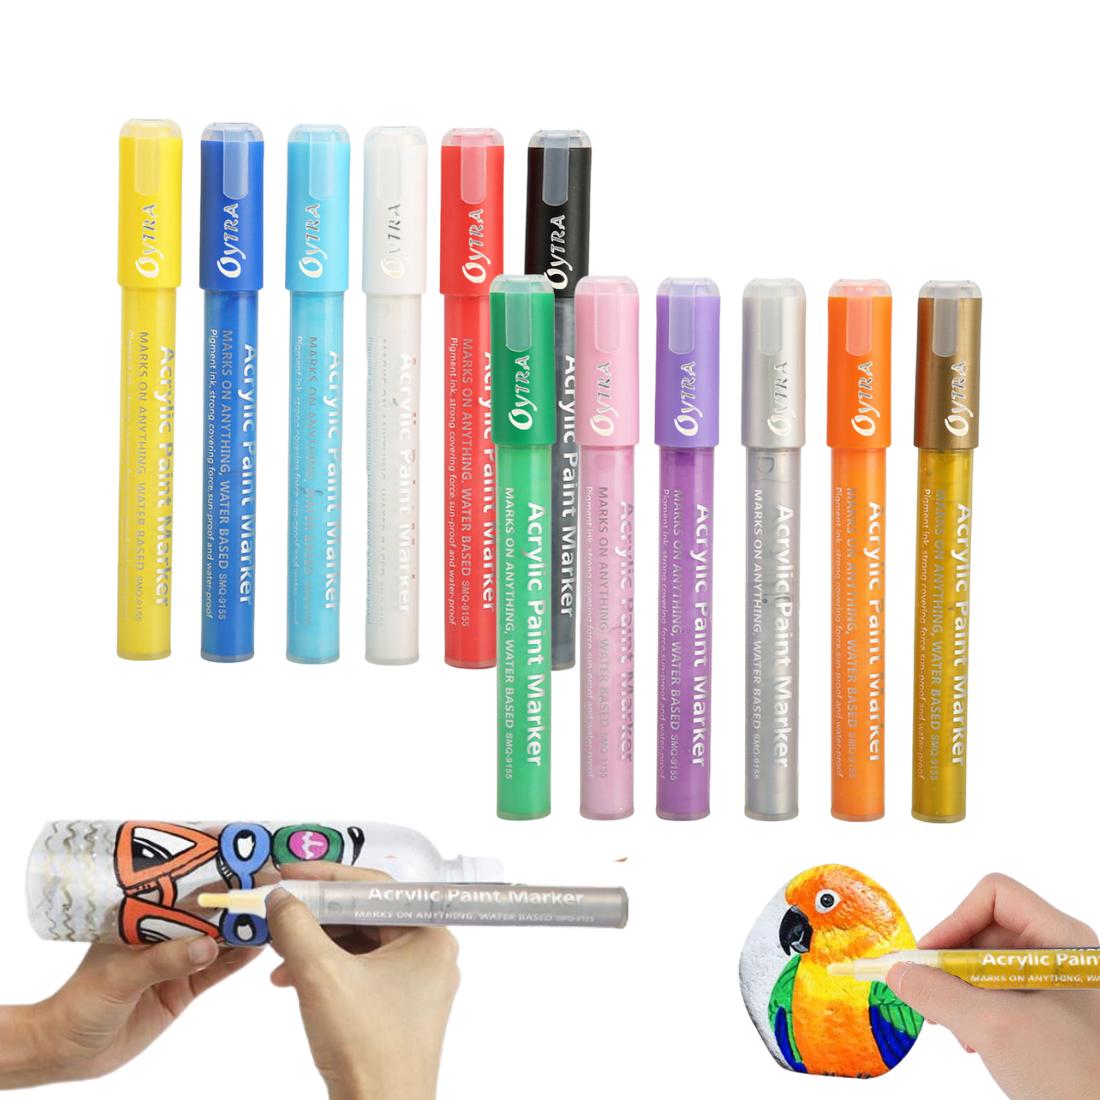 Acrylic Paint Marker Pens 2mm-3mm Tip 12 Pen/Set